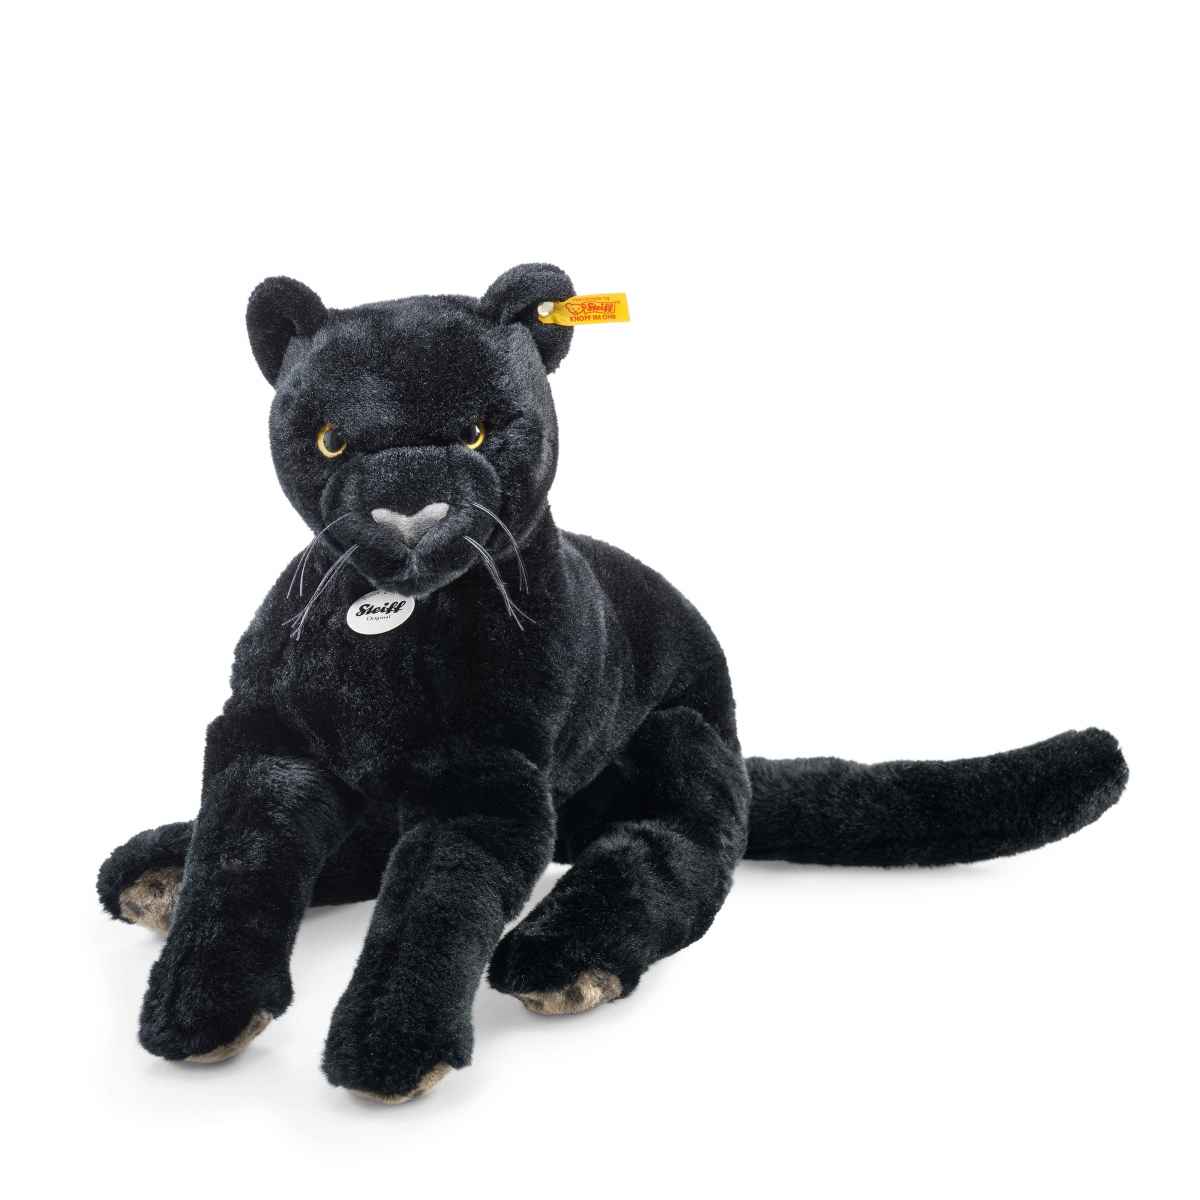 Мягкая игрушка Steiff Nero Dangling Panther черный мягкая игрушка steiff mimmi dangling cat черно белый